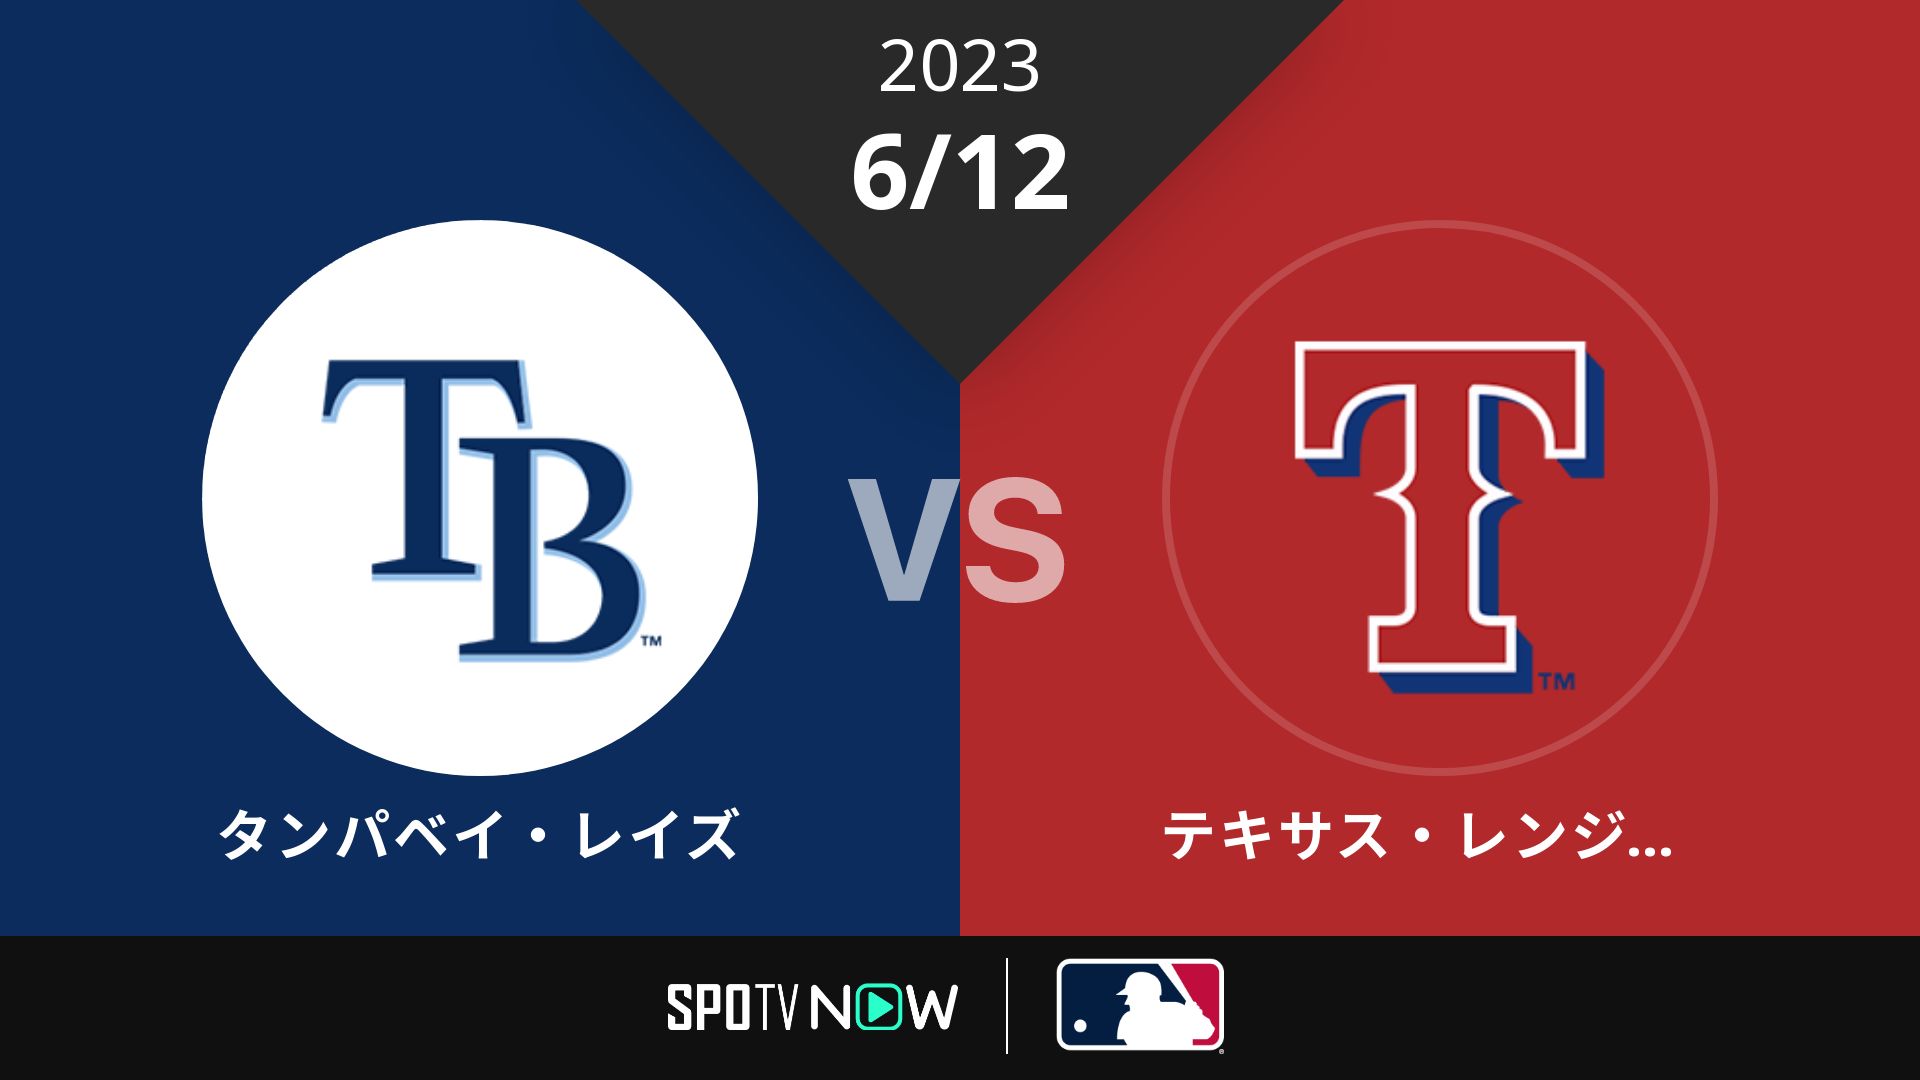 2023/6/12 レイズ vs レンジャーズ [MLB]